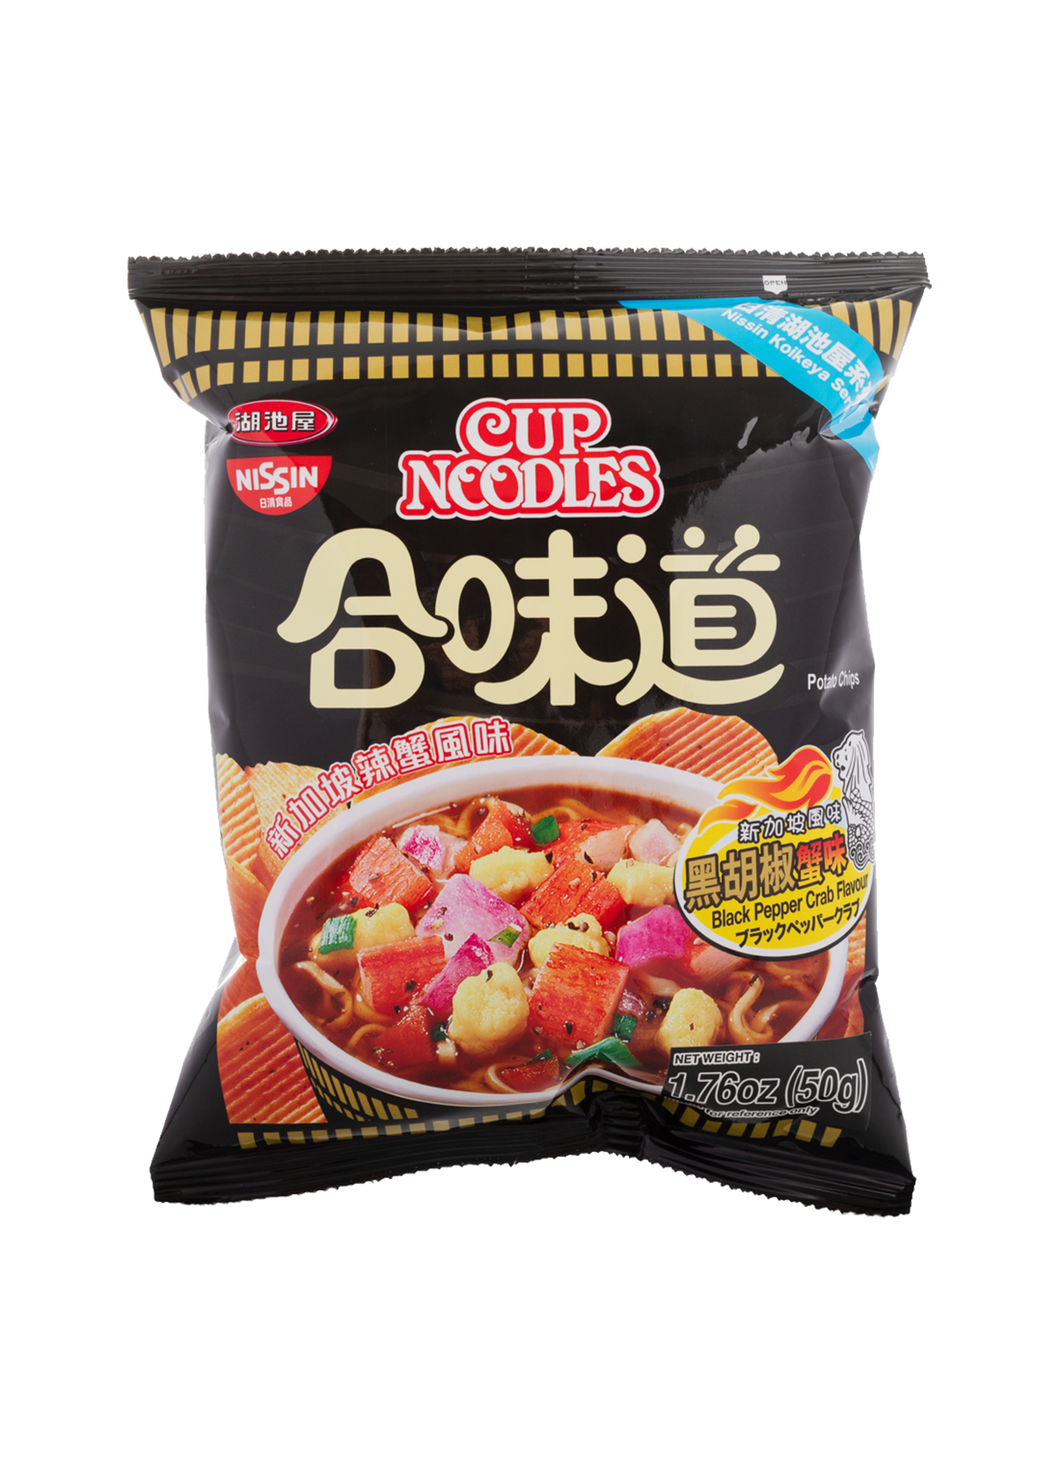 Cup Noodles Black Pepper Crab Flavor Potato Chips 50g